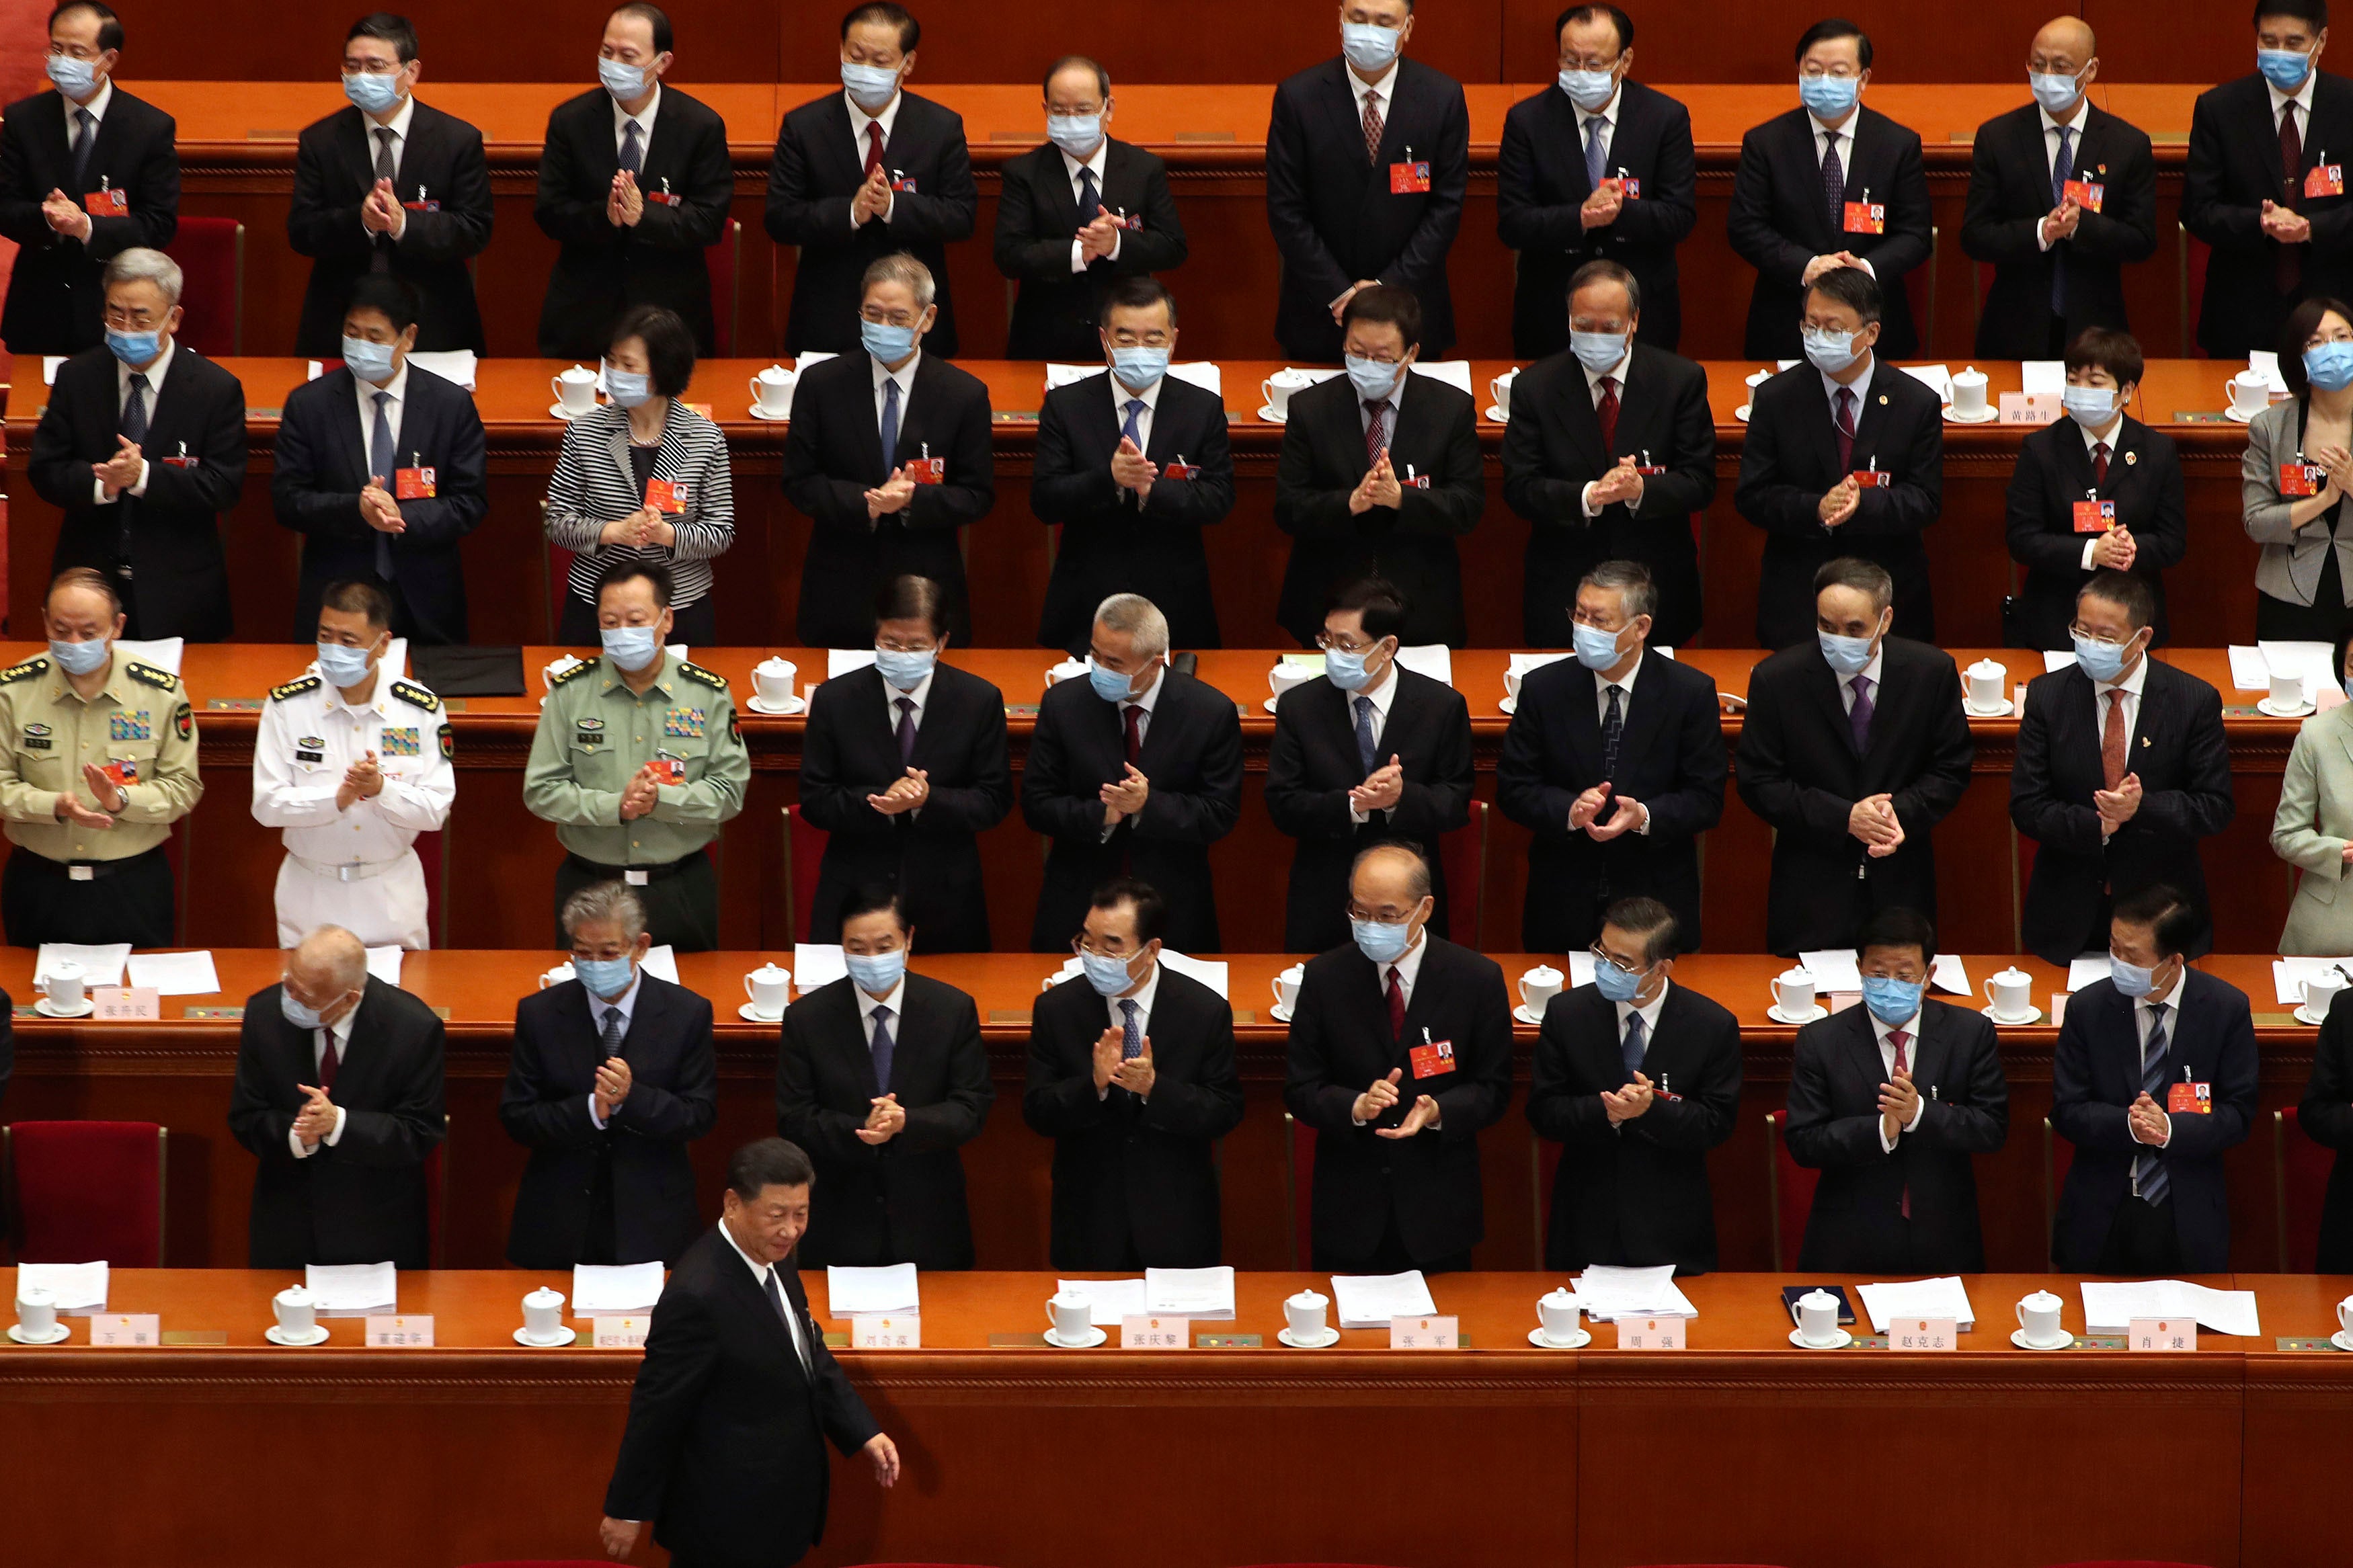 Les députés de l’Assemblée nationale populaire applaudissent lors de l’arrivée du président chinois Xi Jinping pour la session d'ouverture de l’ANP au Grand Palais du Peuple à Pékin, le 22 mai 2020.